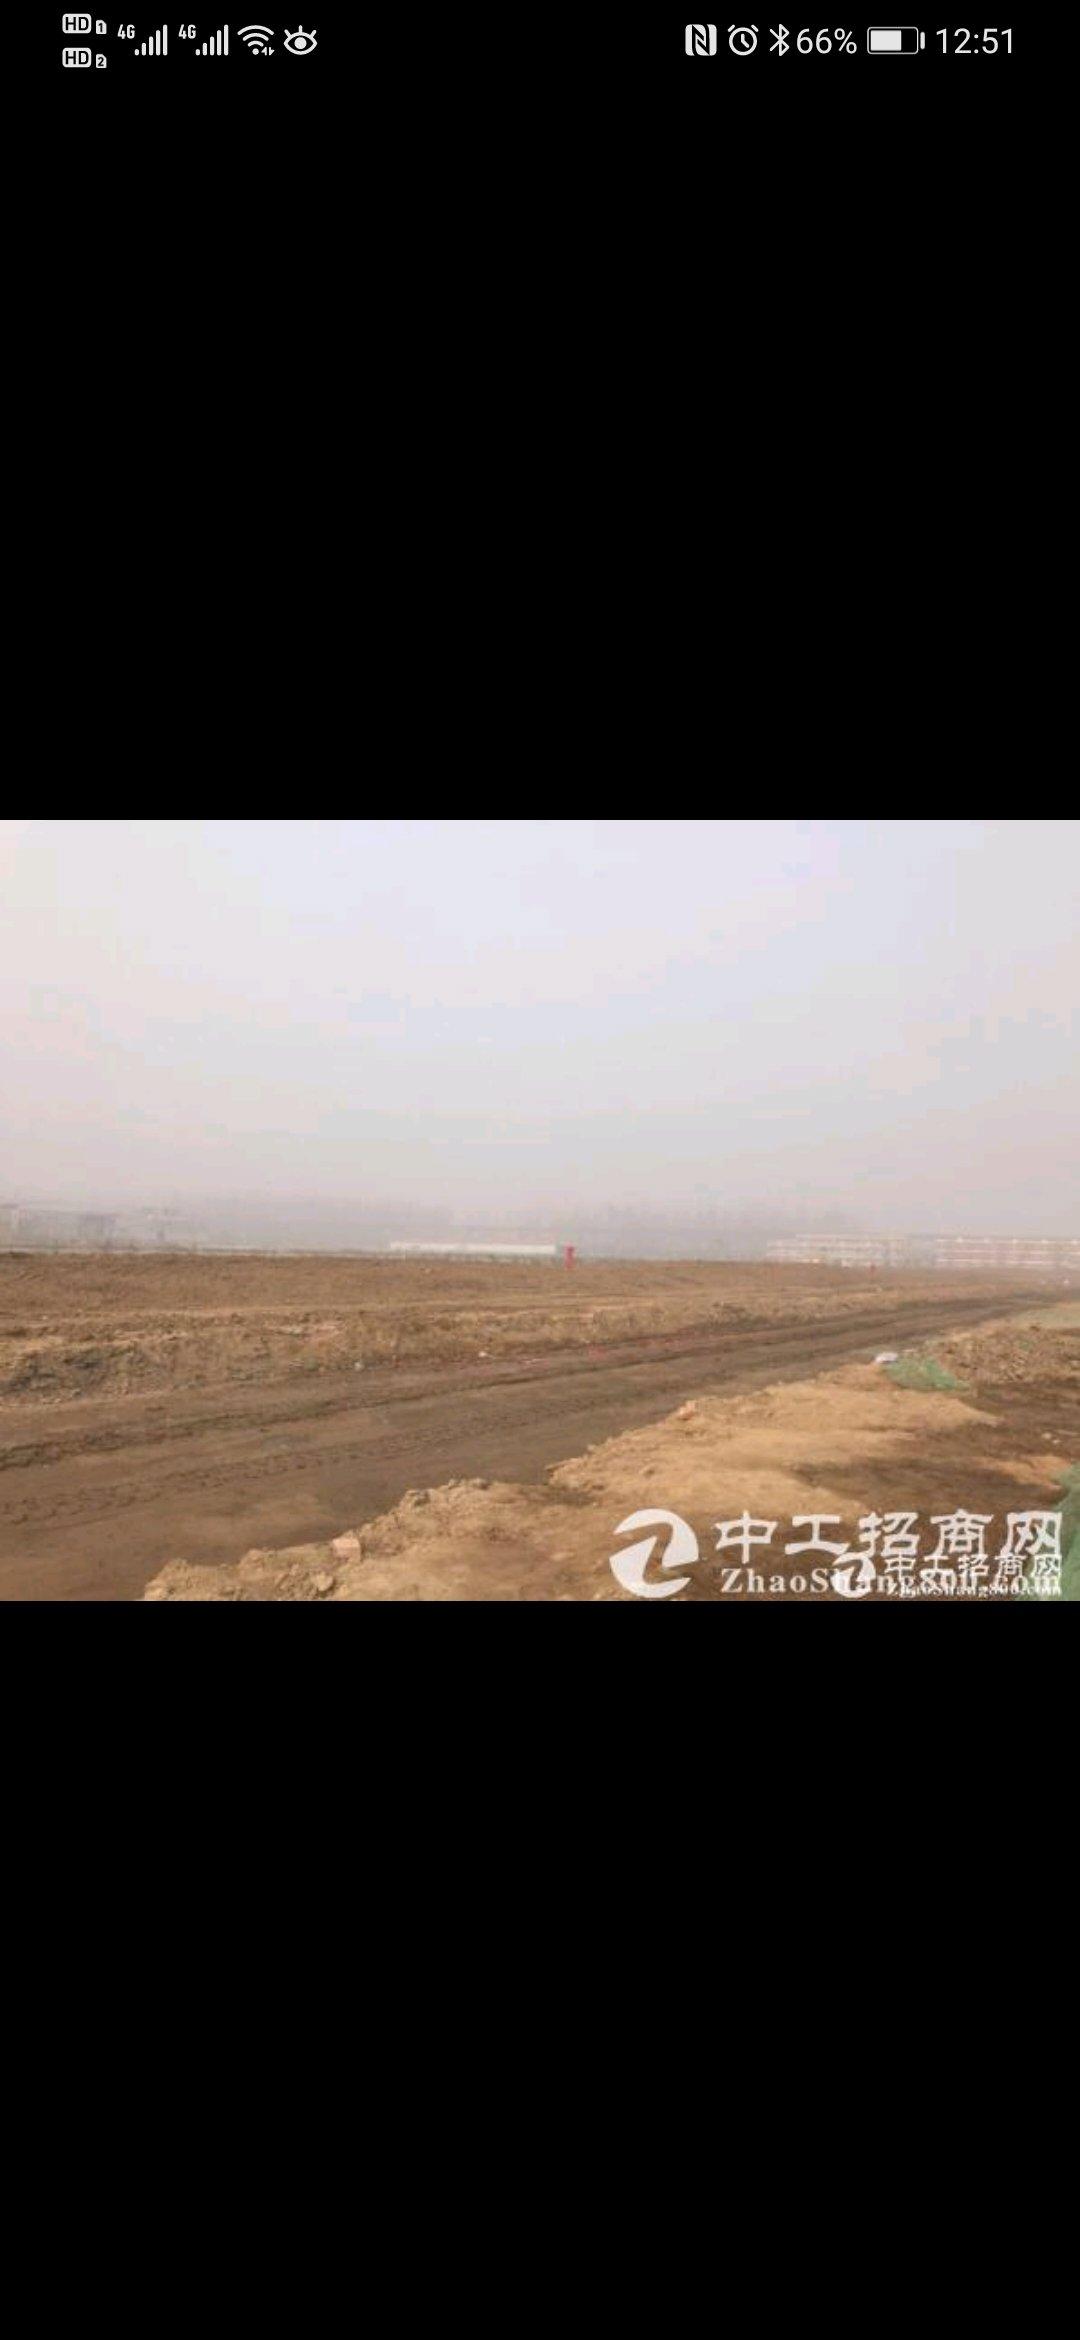 河南郑州新郑市700亩红本工业土地出售，七通一平，100亩起